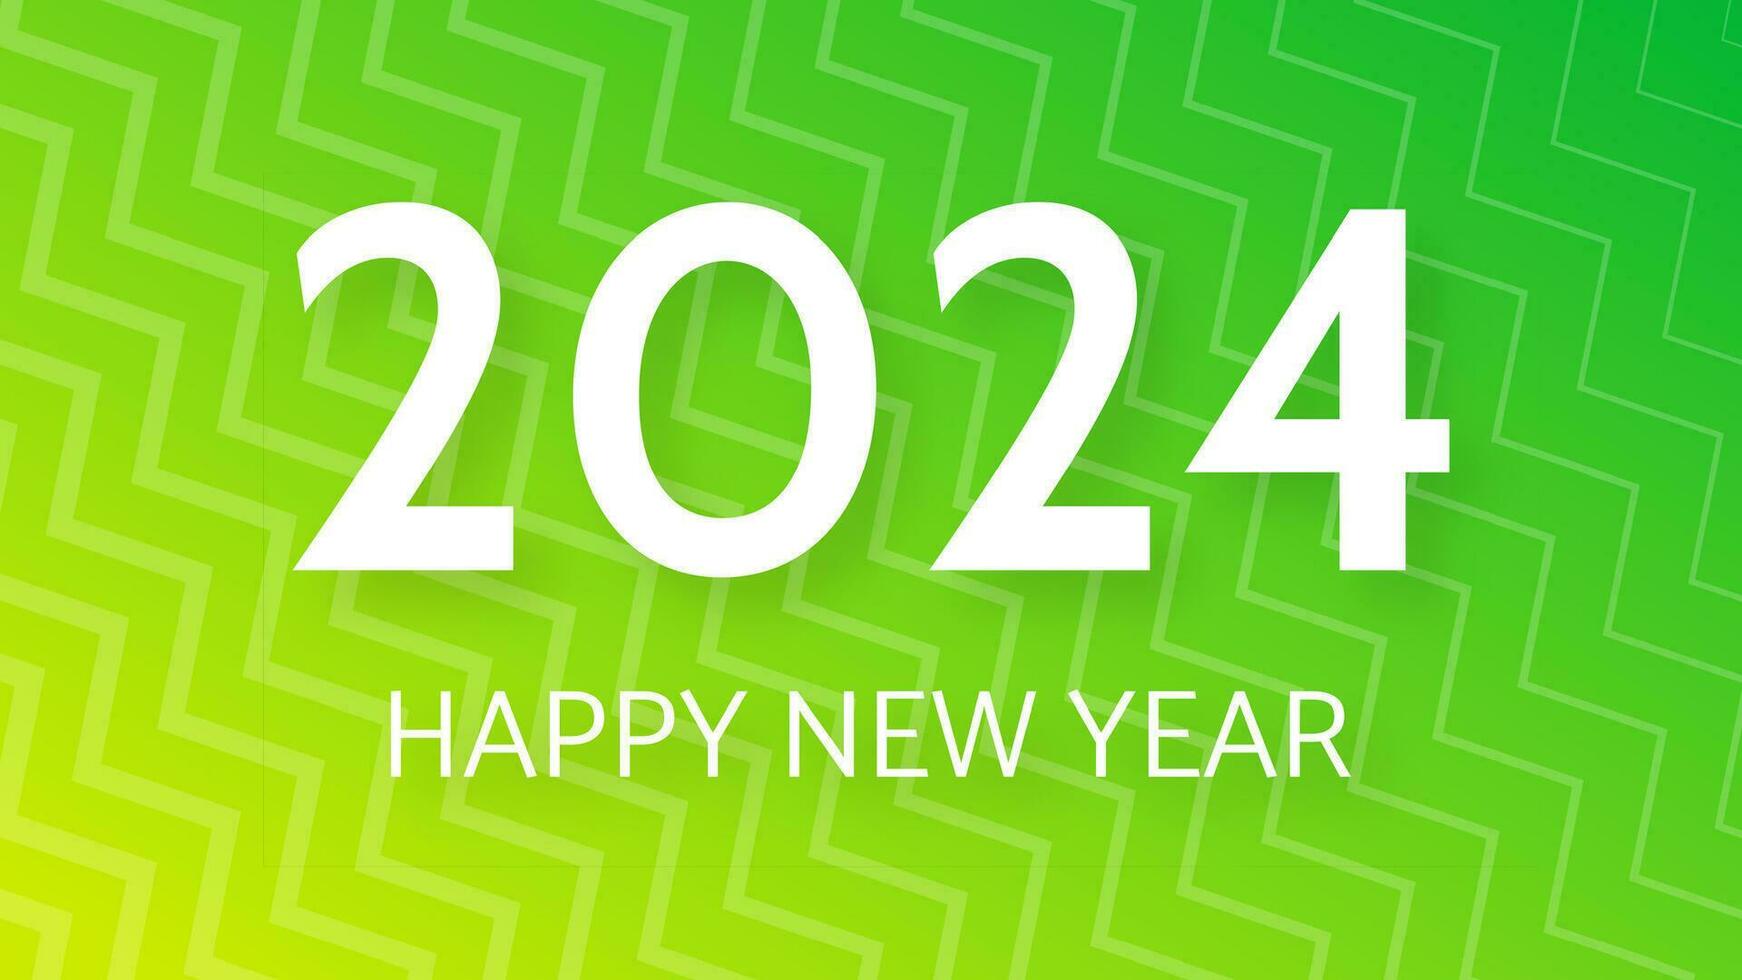 2024 Lycklig ny år på färgrik bakgrund vektor